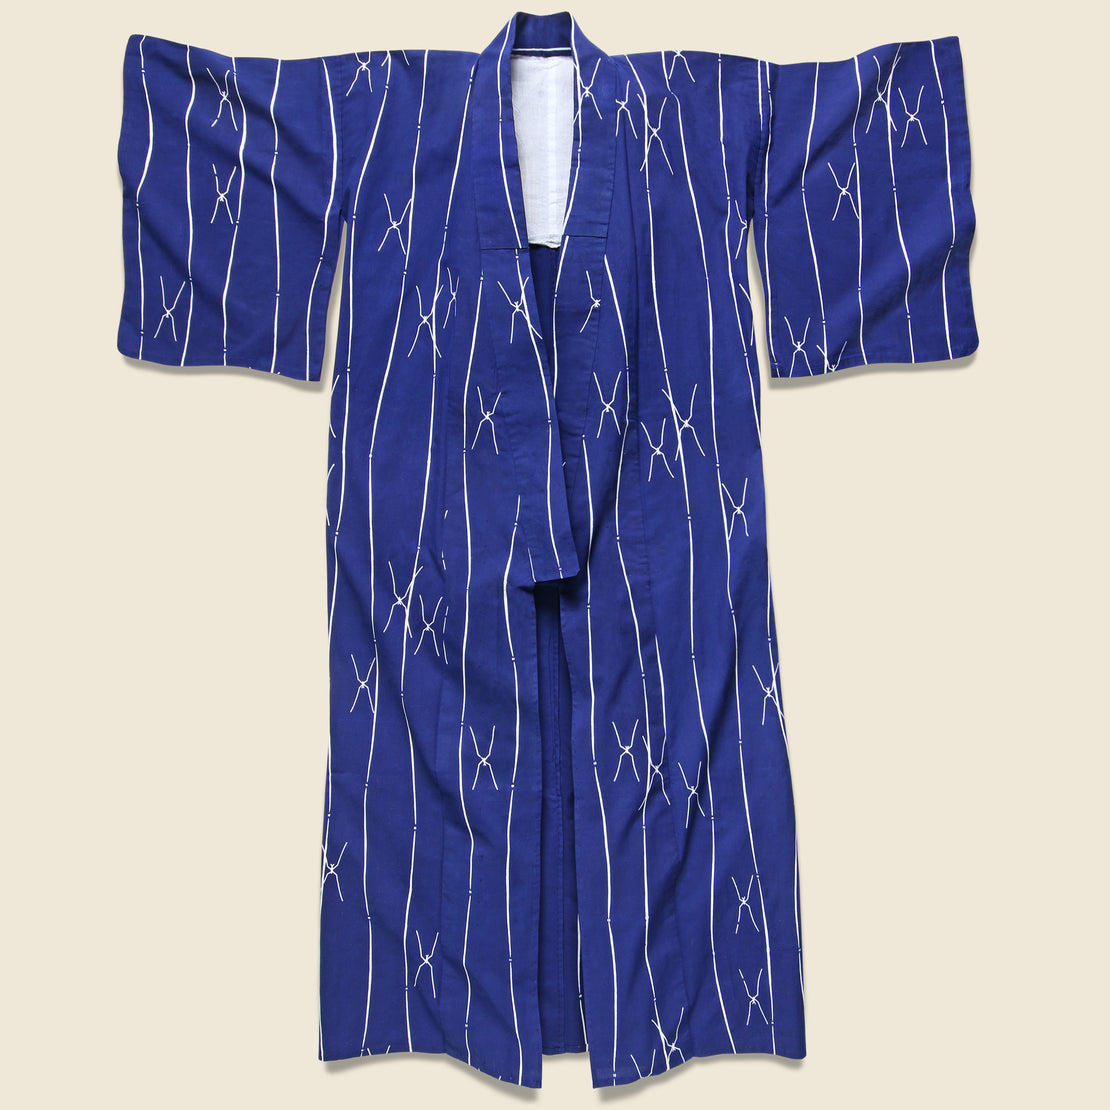 Vintage Long Stripe & X Kimono Robe - Bright Indigo/White